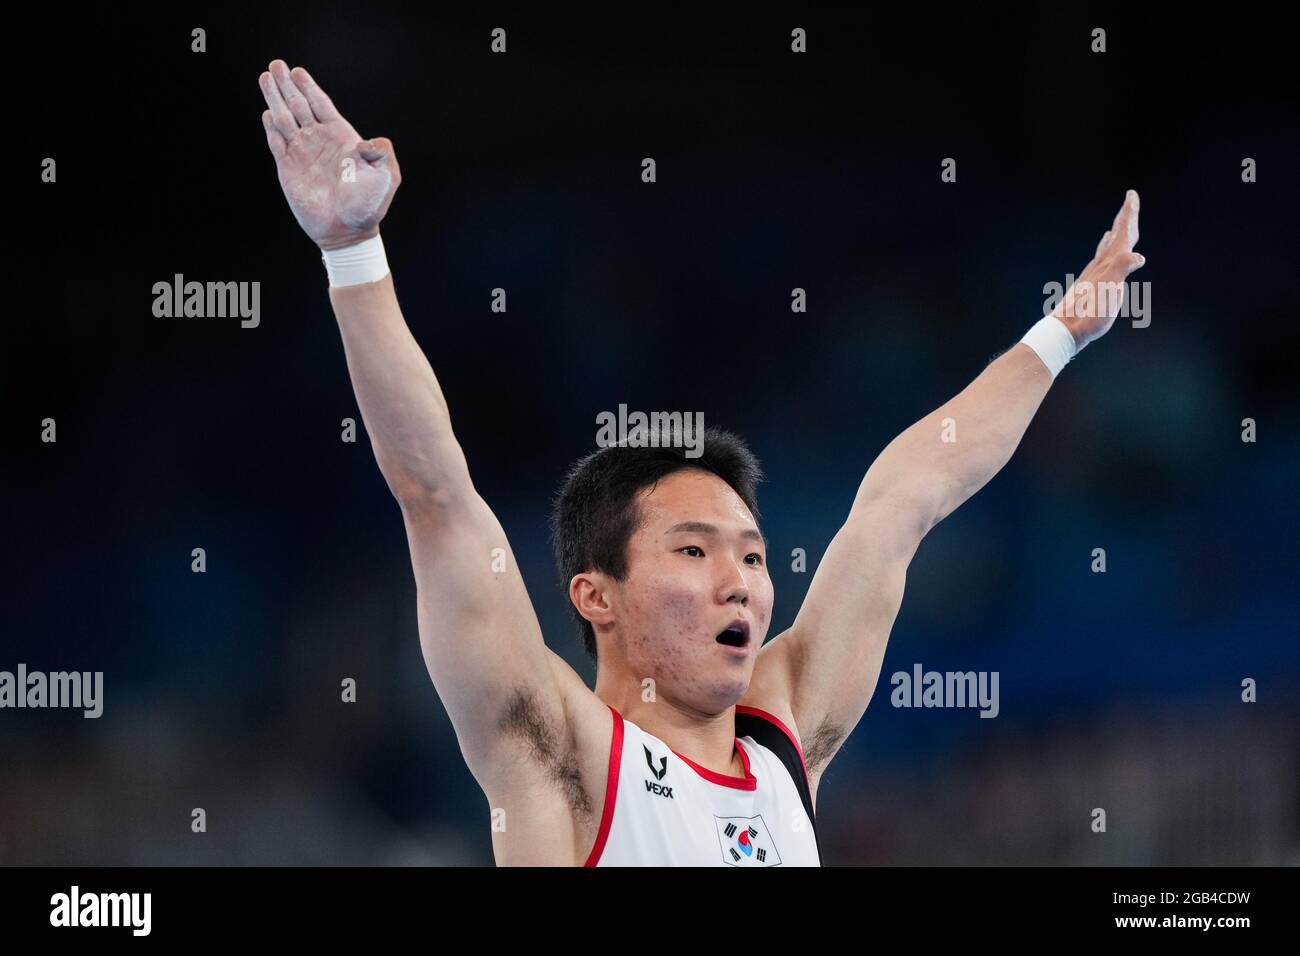 (210802) -- TOKIO, 2. August 2021 (Xinhua) -- Shin Jeahwan aus Südkorea reagiert während des Turnfinale der Männer bei den Olympischen Spielen 2020 in Tokio, Japan, am 2. August 2021. (Xinhua/Liu Dawei) Stockfoto